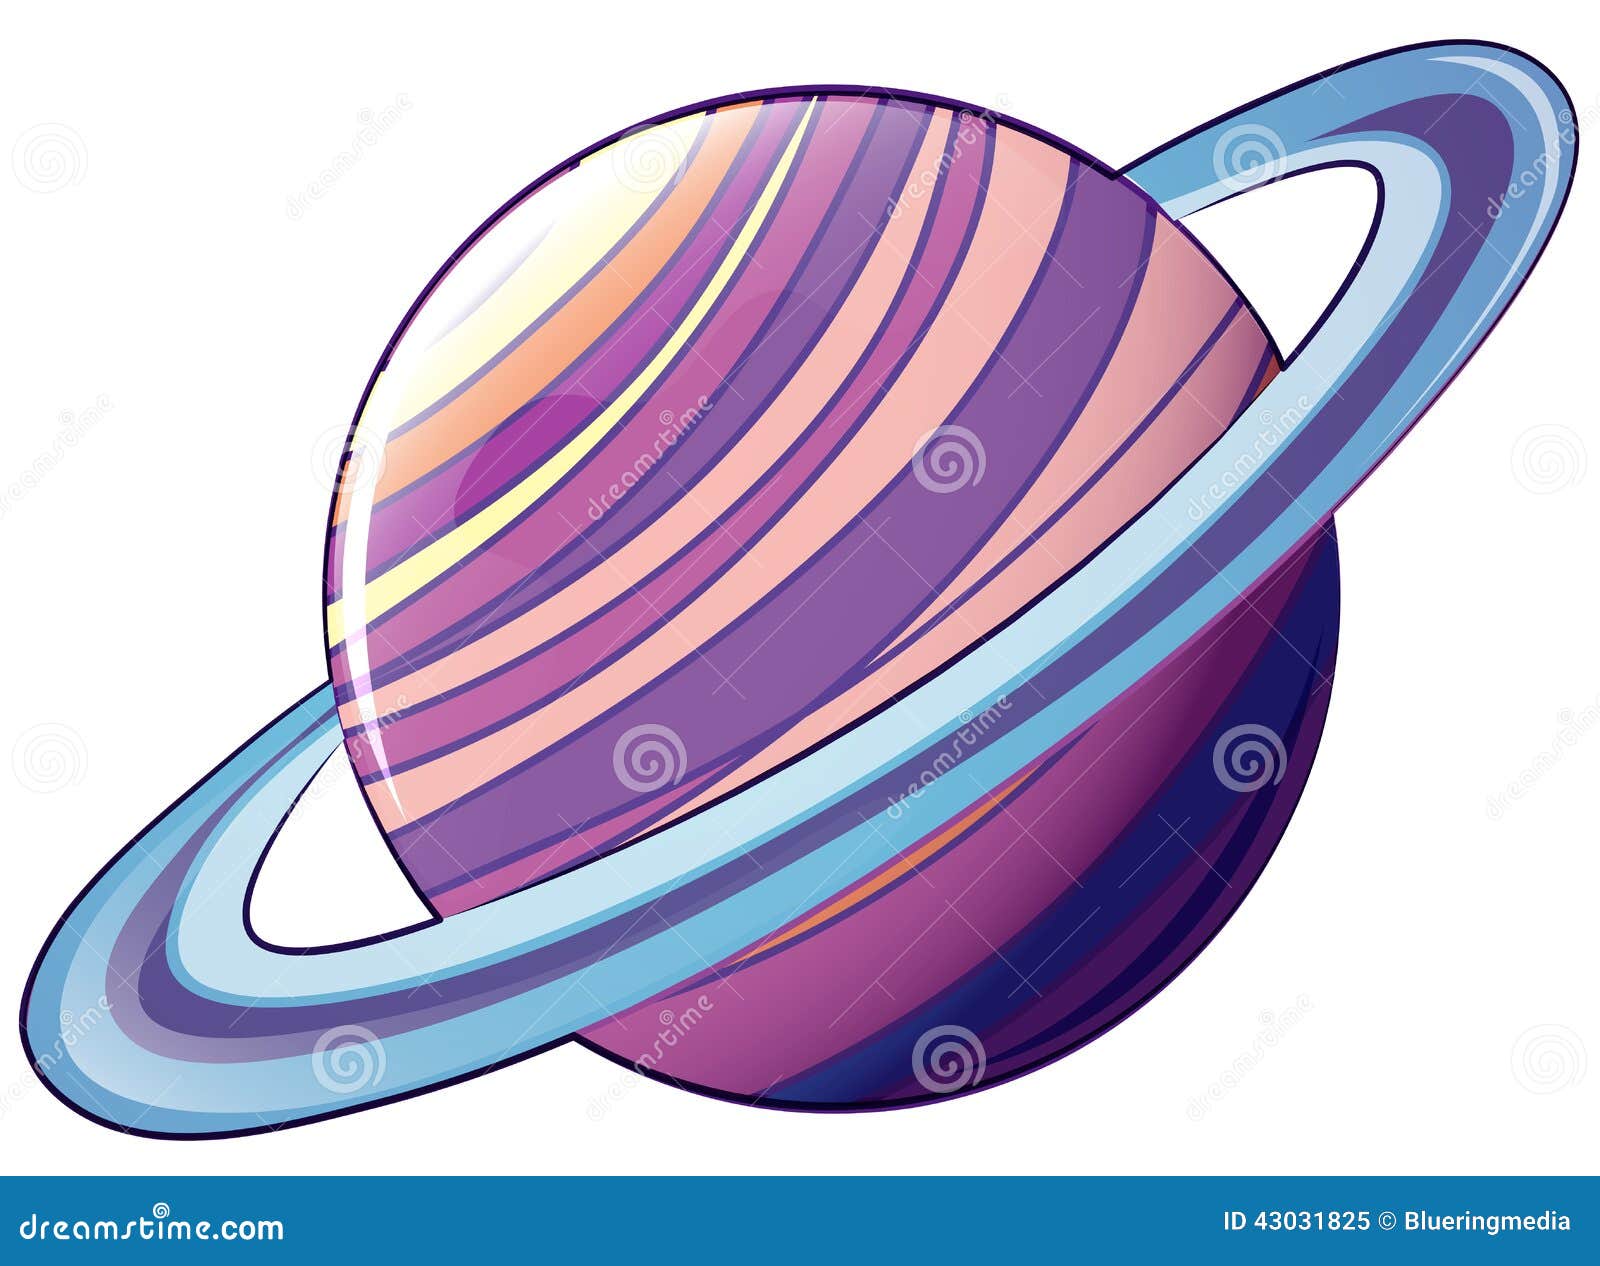 Сатурн цветной на белом фоне